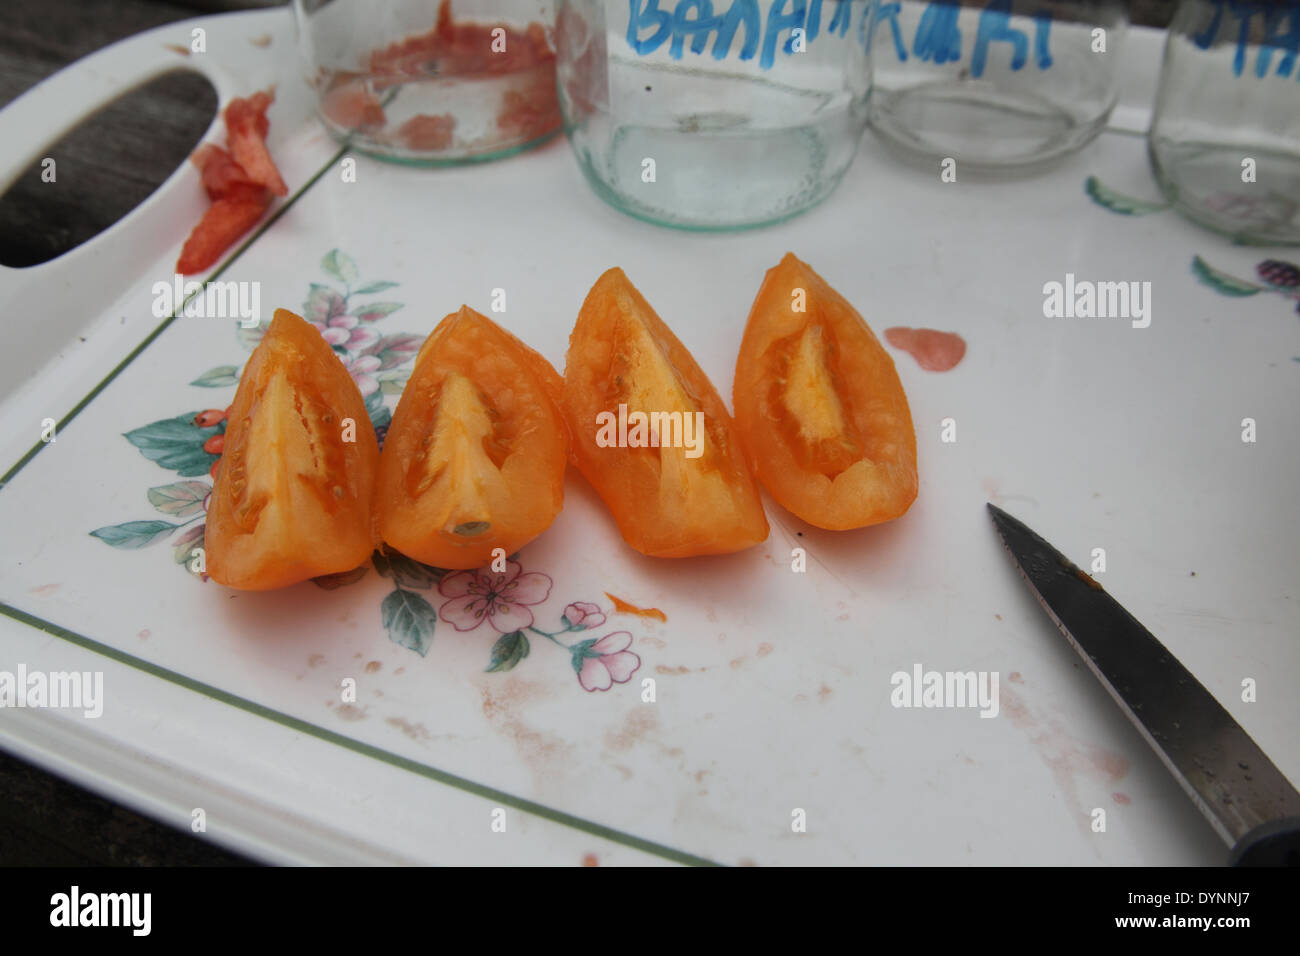 La sauvegarde des graines de tomate étape 3 trimestre la tomate avec un couteau pour exposer les graines Banque D'Images